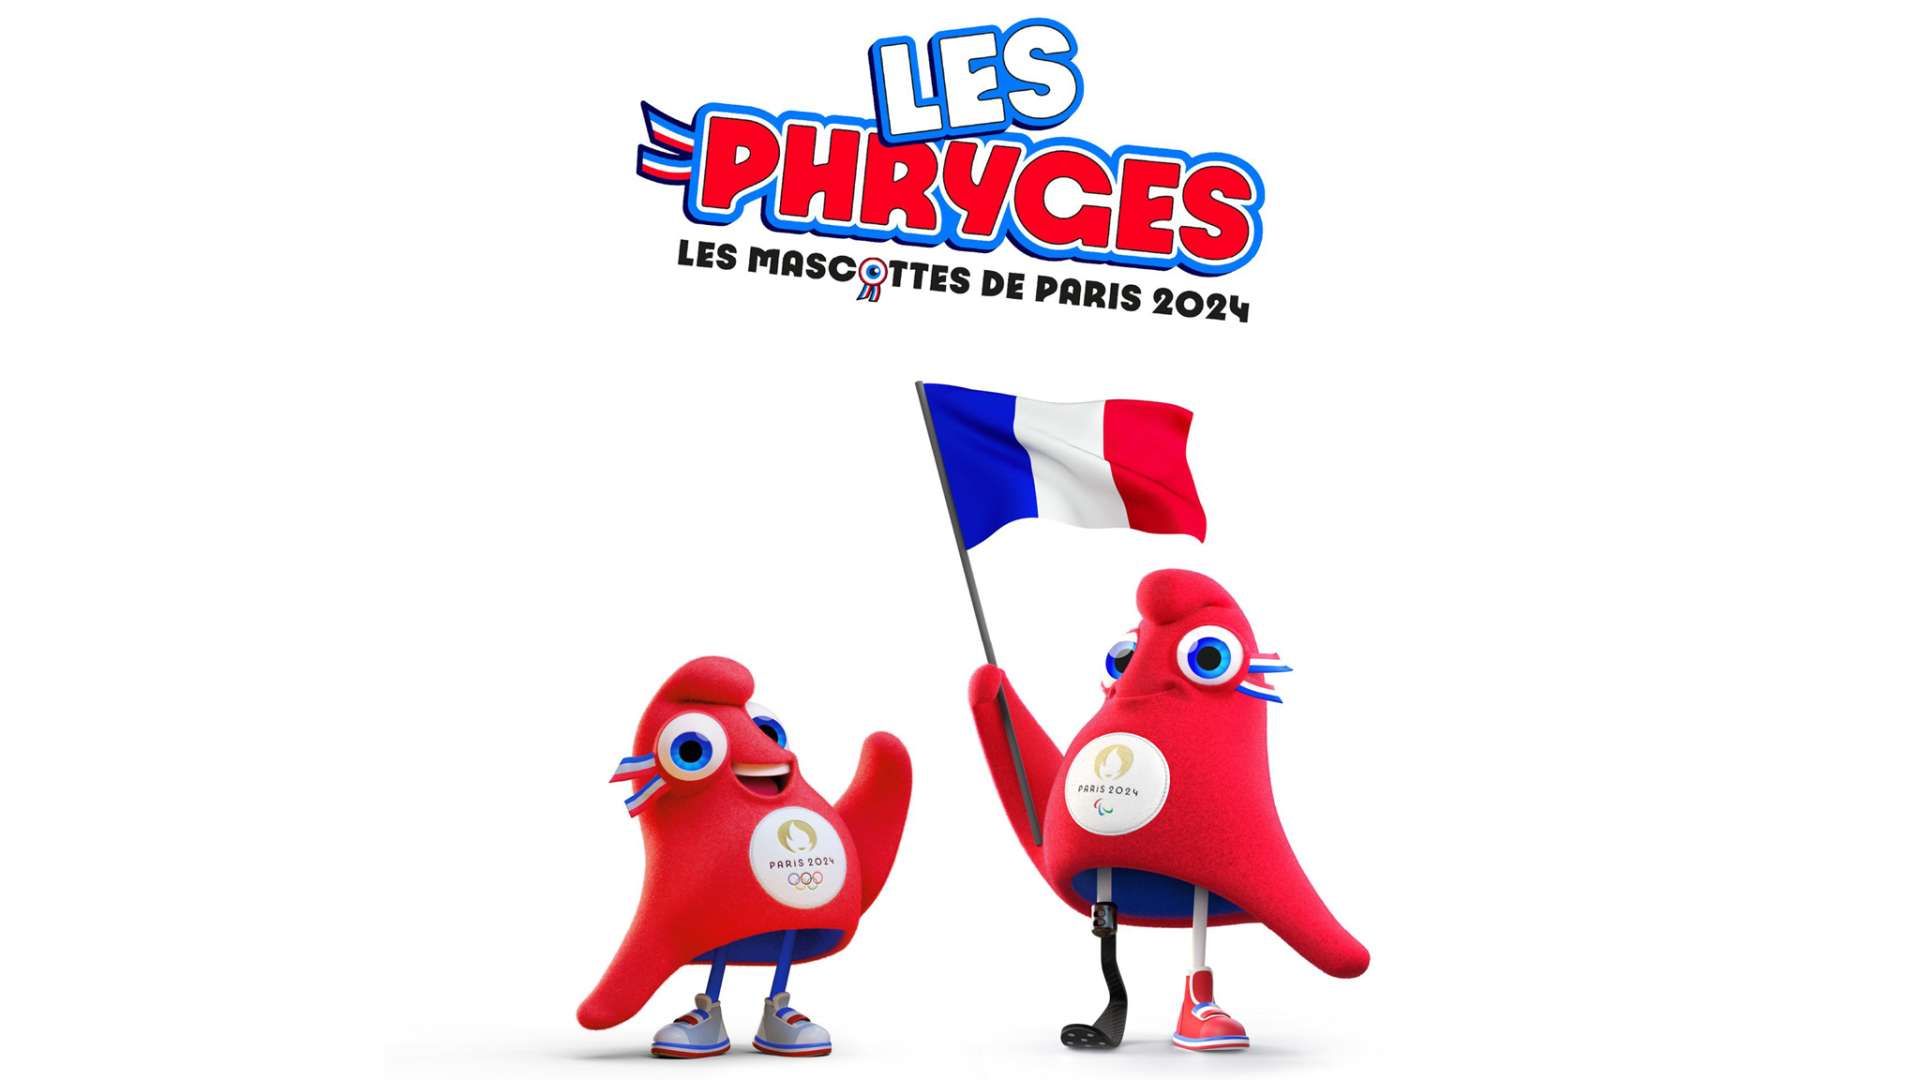 Les phryges, mascottes de Paris 2024 CROS Centre Val de Loire